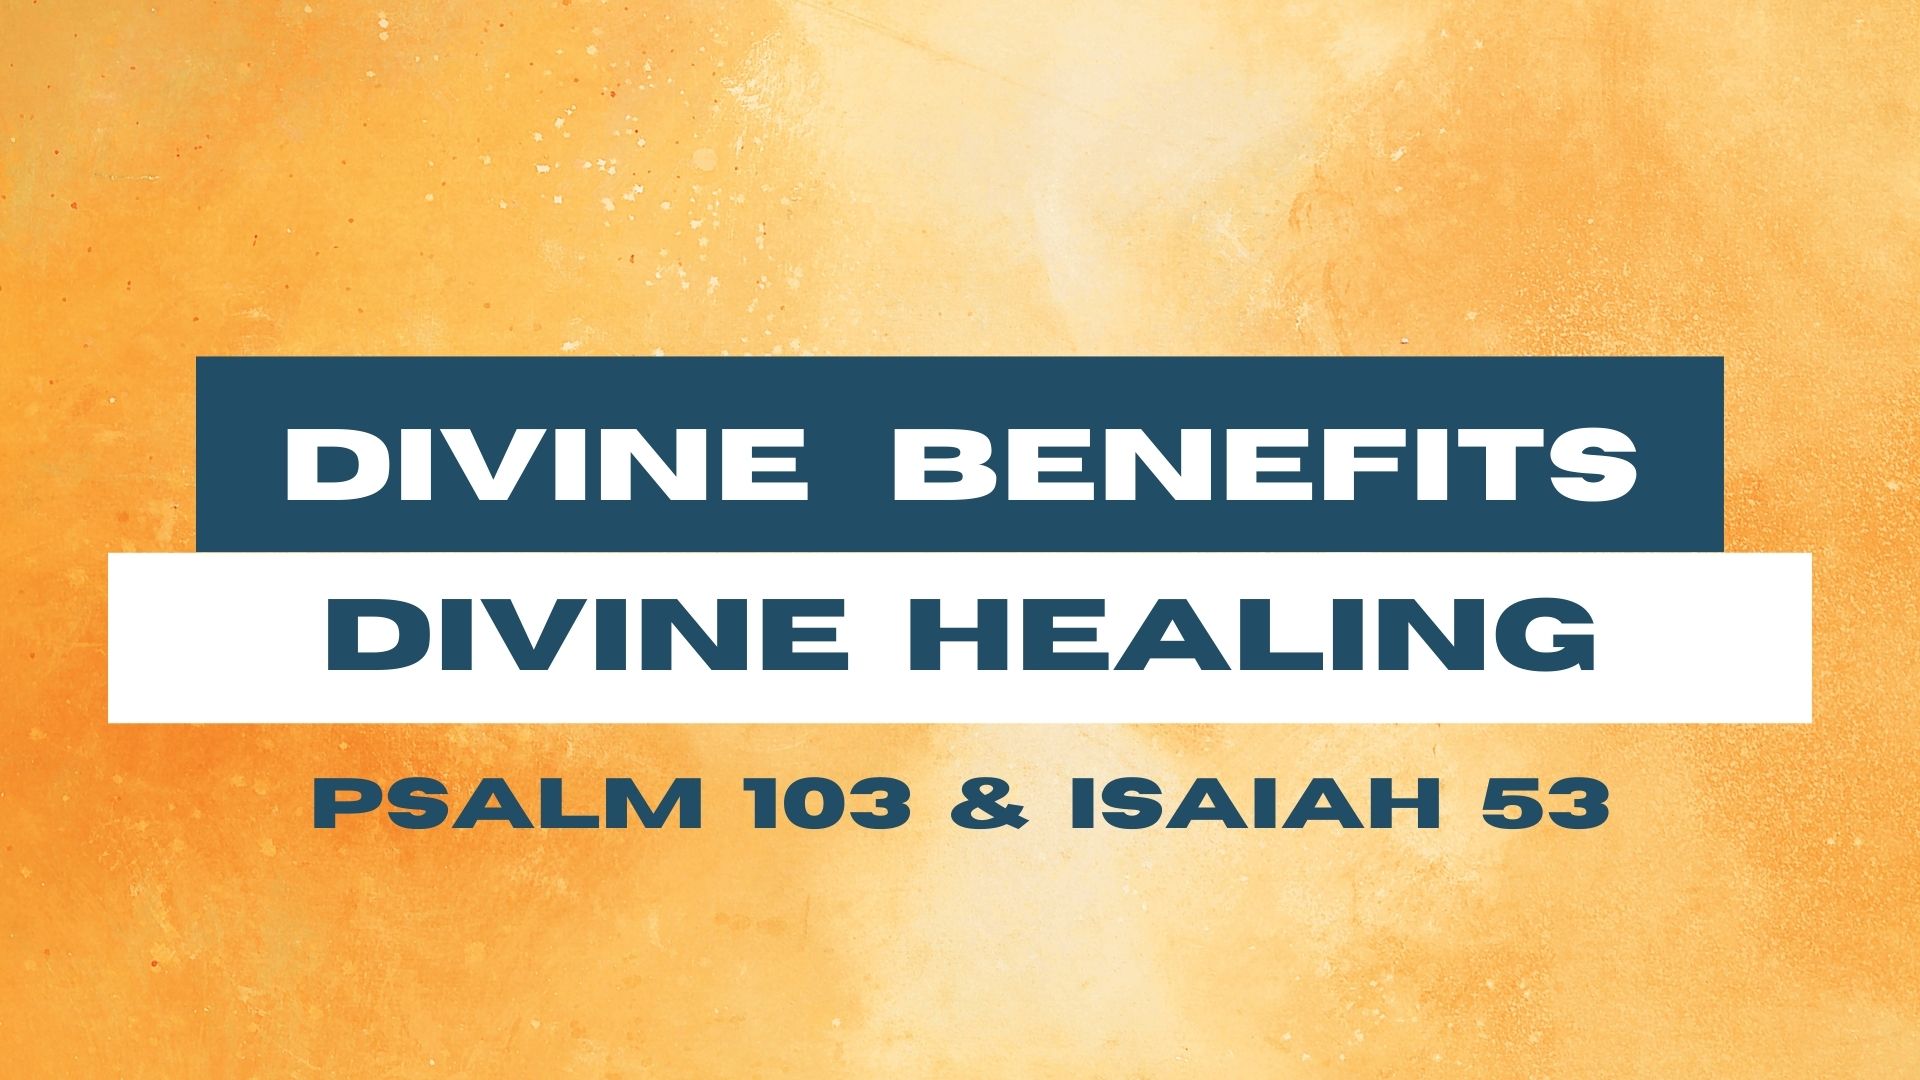 Divine Benefits - Divine Healing